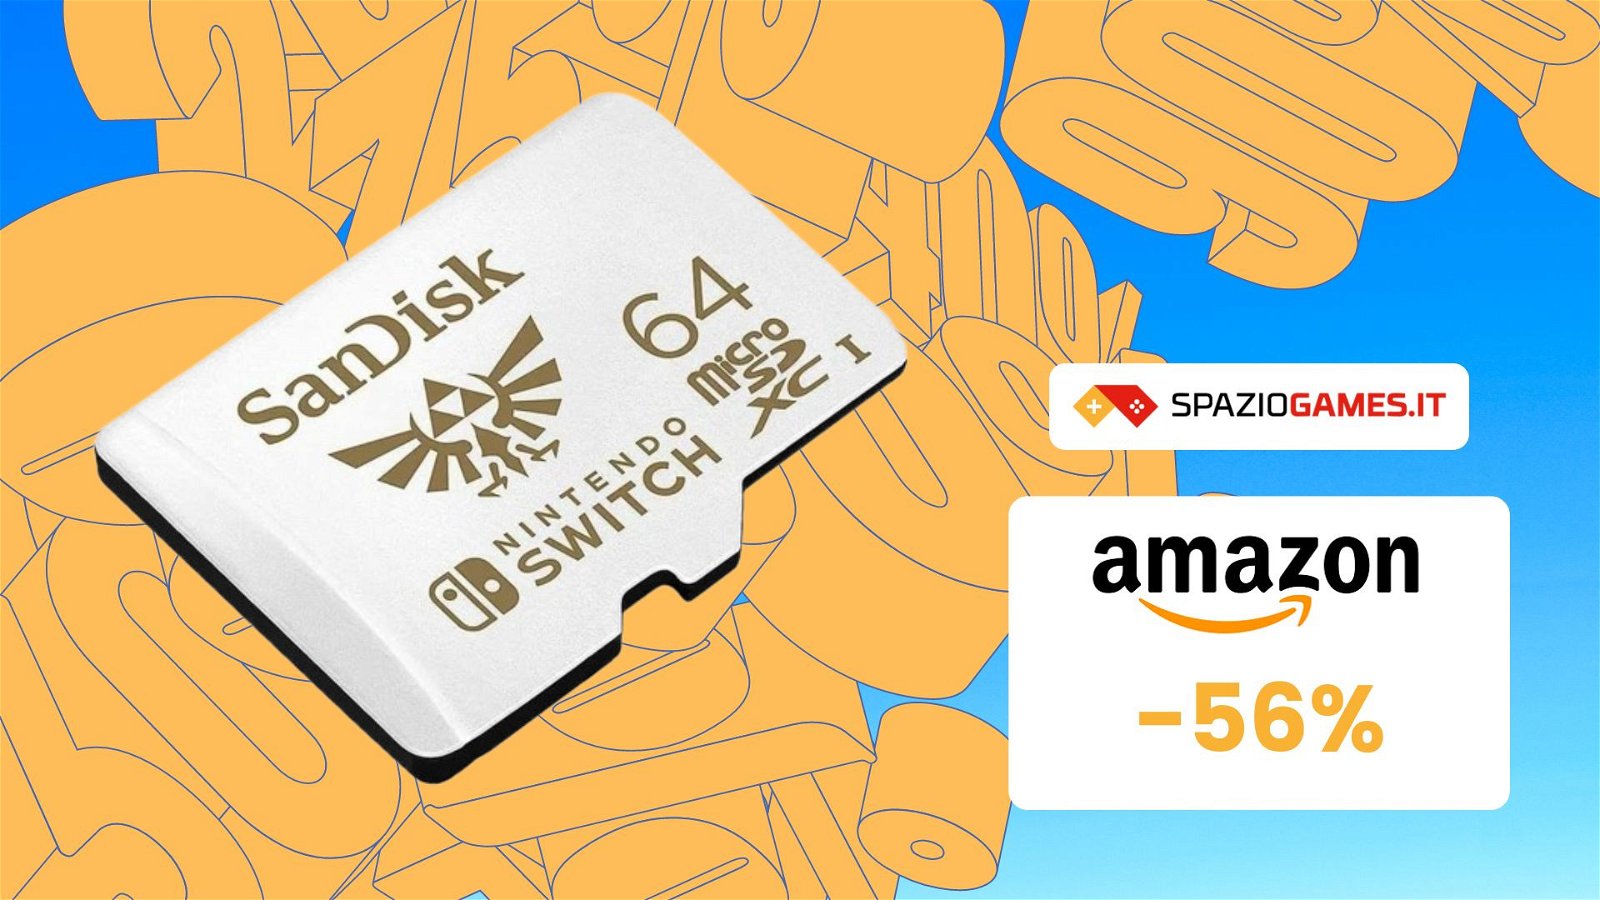 Espandi la memoria del tuo Switch con questa microSD SanDisk 64GB di Zelda! 56% di SCONTO!